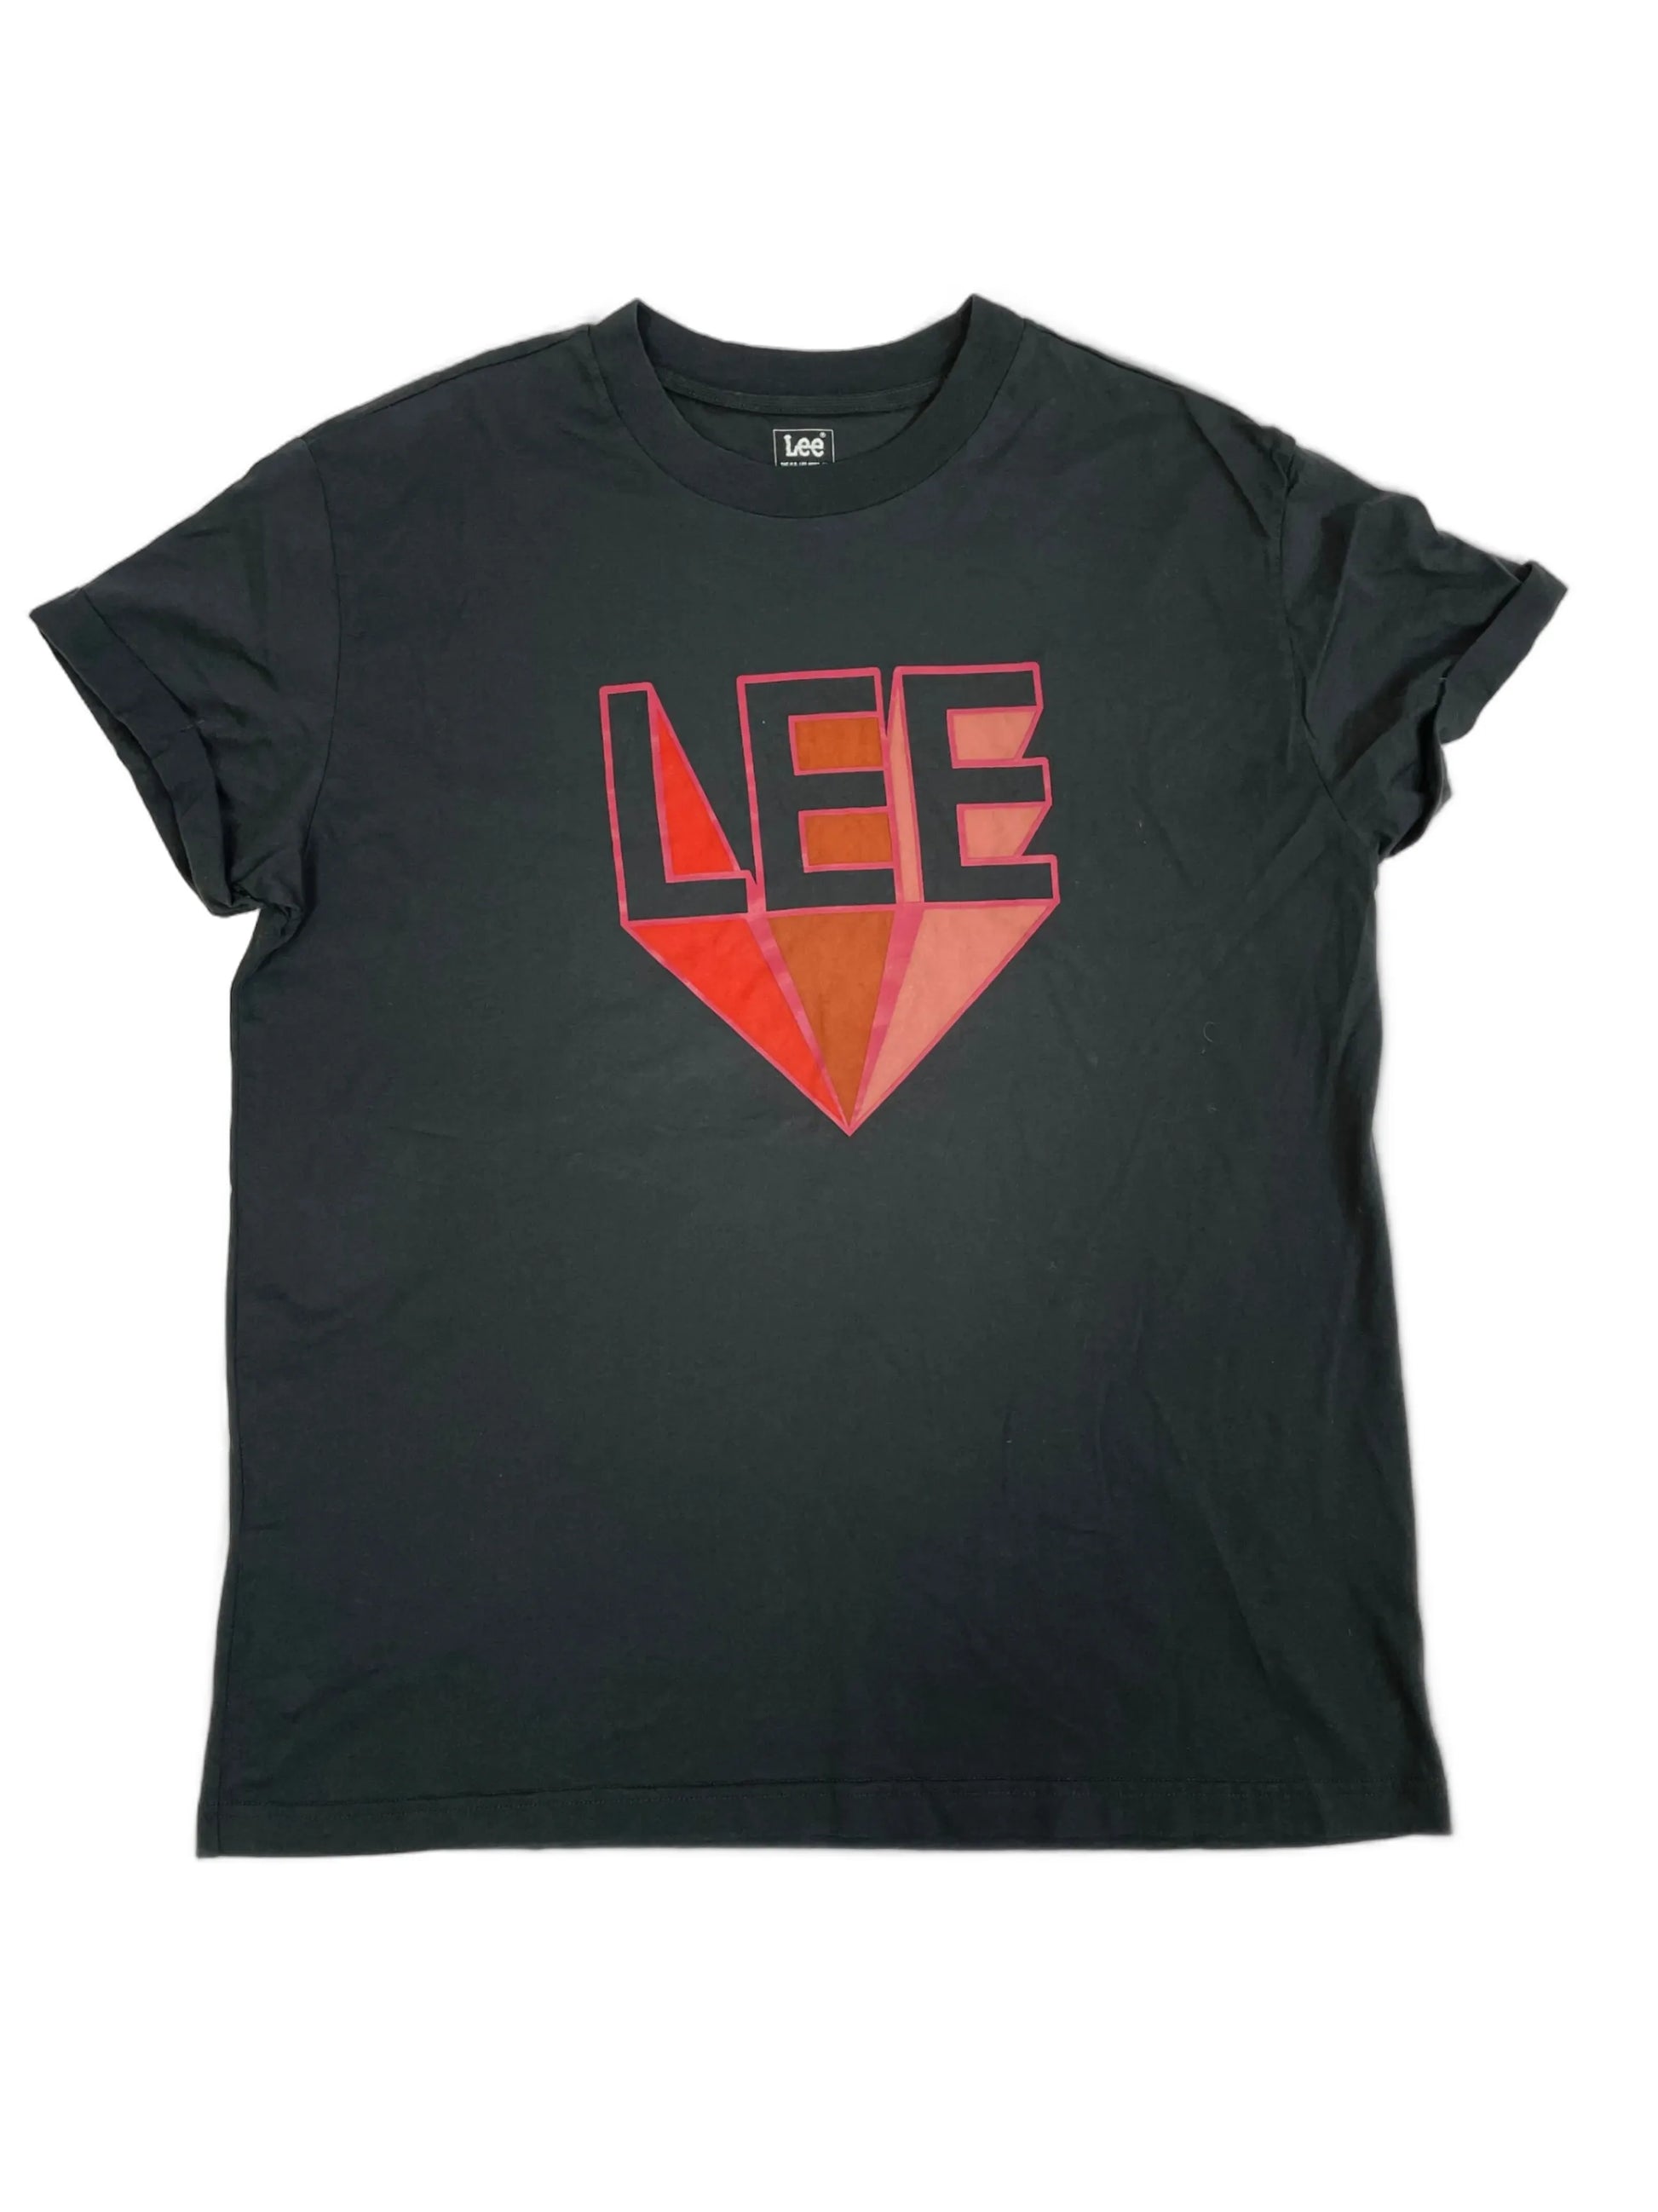 Vintage Lee T-Shirt L 